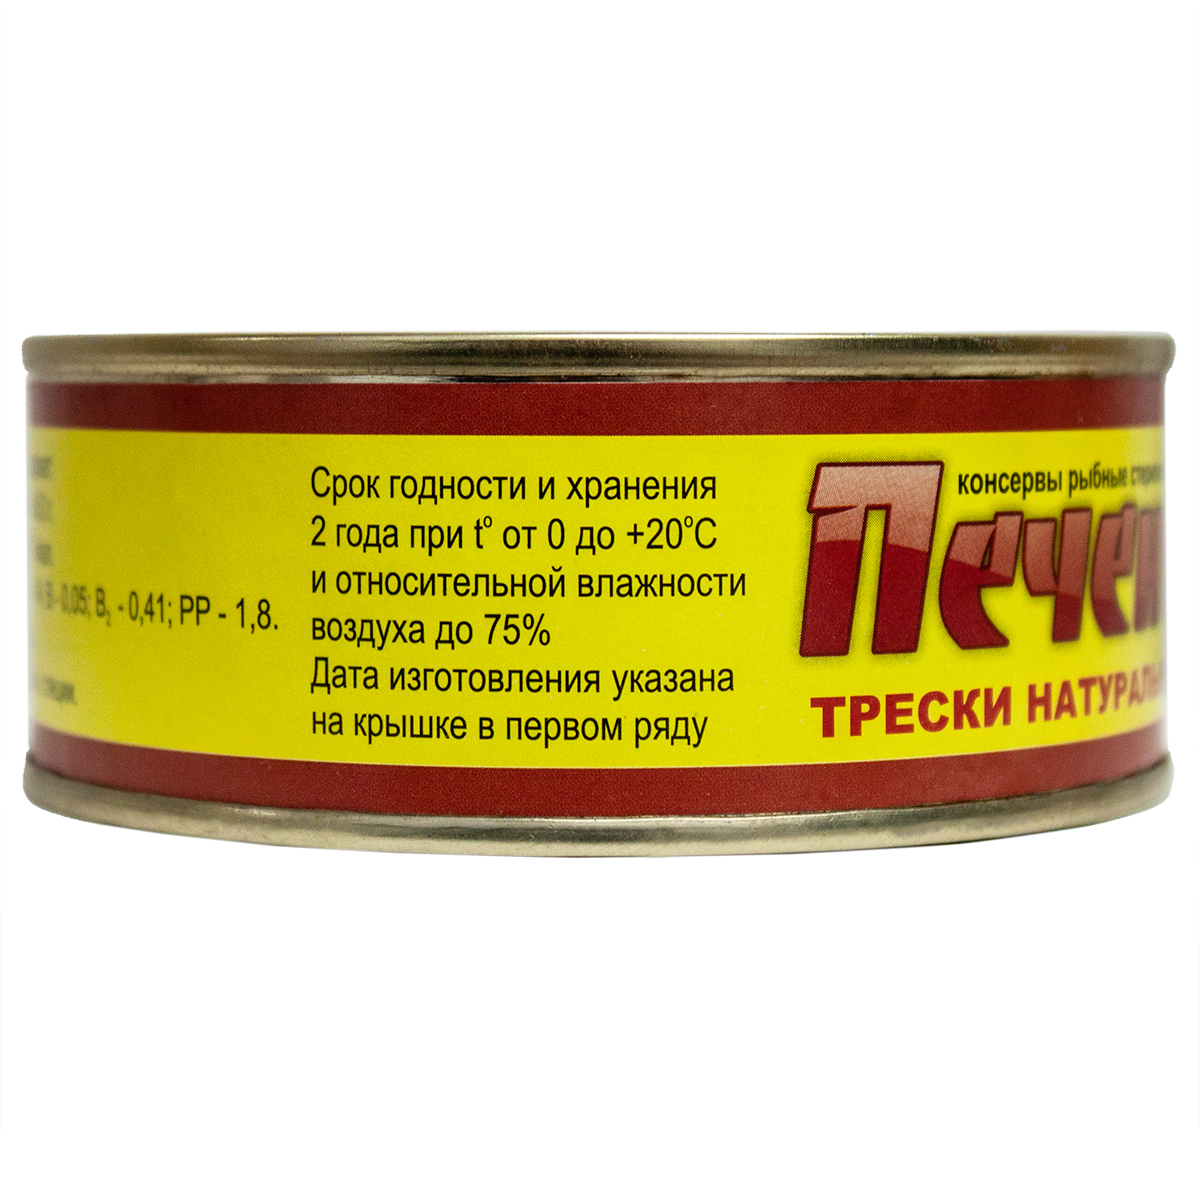 Печень трески натуральная РК Беломор из свежего сырья, 230 г